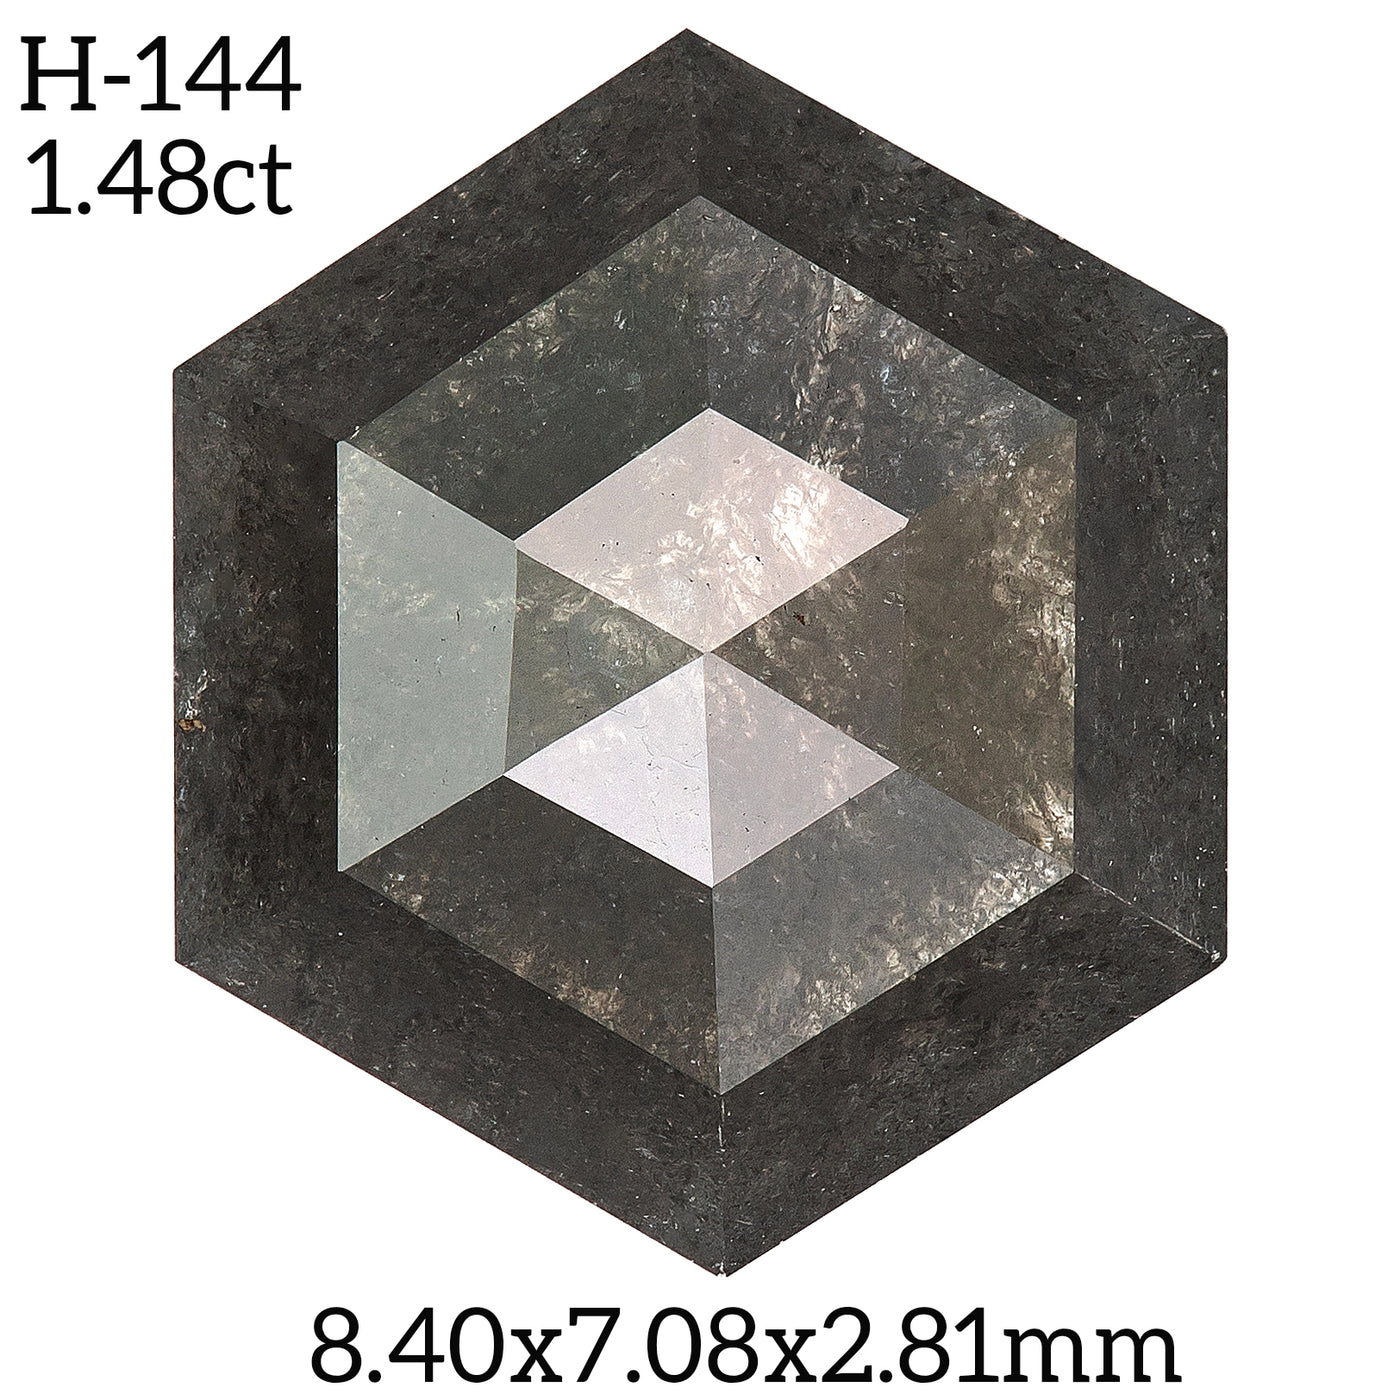 H144 - Salt and pepper hexagon diamond